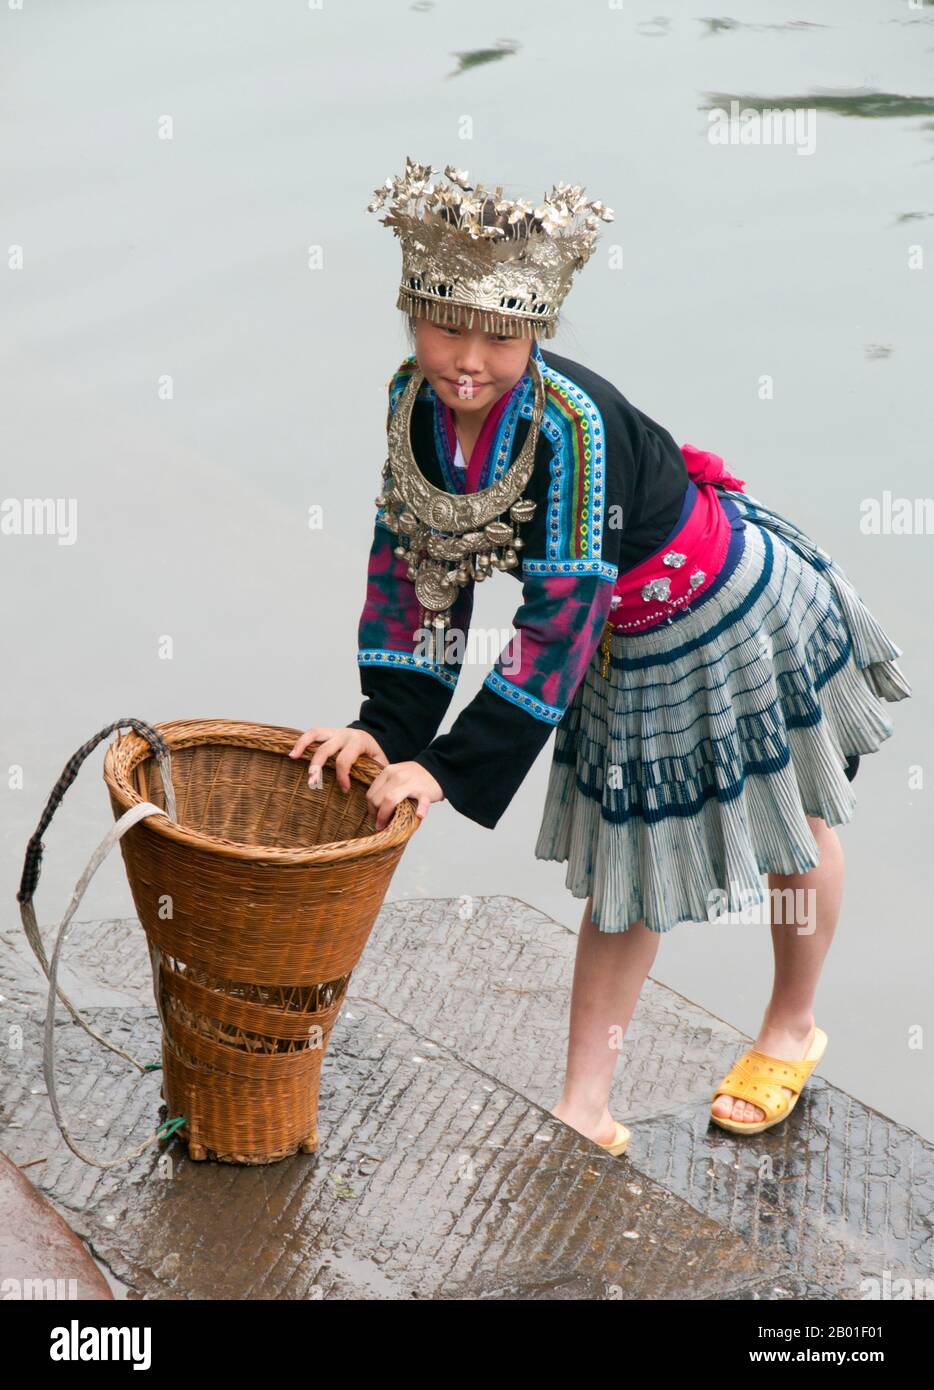 Chine: Fille Han vêtue en costume traditionnel Miao, Fenghuang, province de Hunan. Fenghuang est chinois pour Phoenix et se réfère à la mythique oiseau de feu sacré qui peut être trouvé dans les mythologies des Perses, Grecs, Romains, Egyptiens, Chinois, Et (selon Sanchuniathon) les Phéniciens. La légende suggère que deux phénolxes à la découverte de la ville ont survolé pendant un certain temps avant de voler à contrecœur. La ville de Fenghuang est une ancienne ville bien conservée, qui date soi-disant de 248 BCE. Elle abrite les minorités Miao et Tujia. Banque D'Images